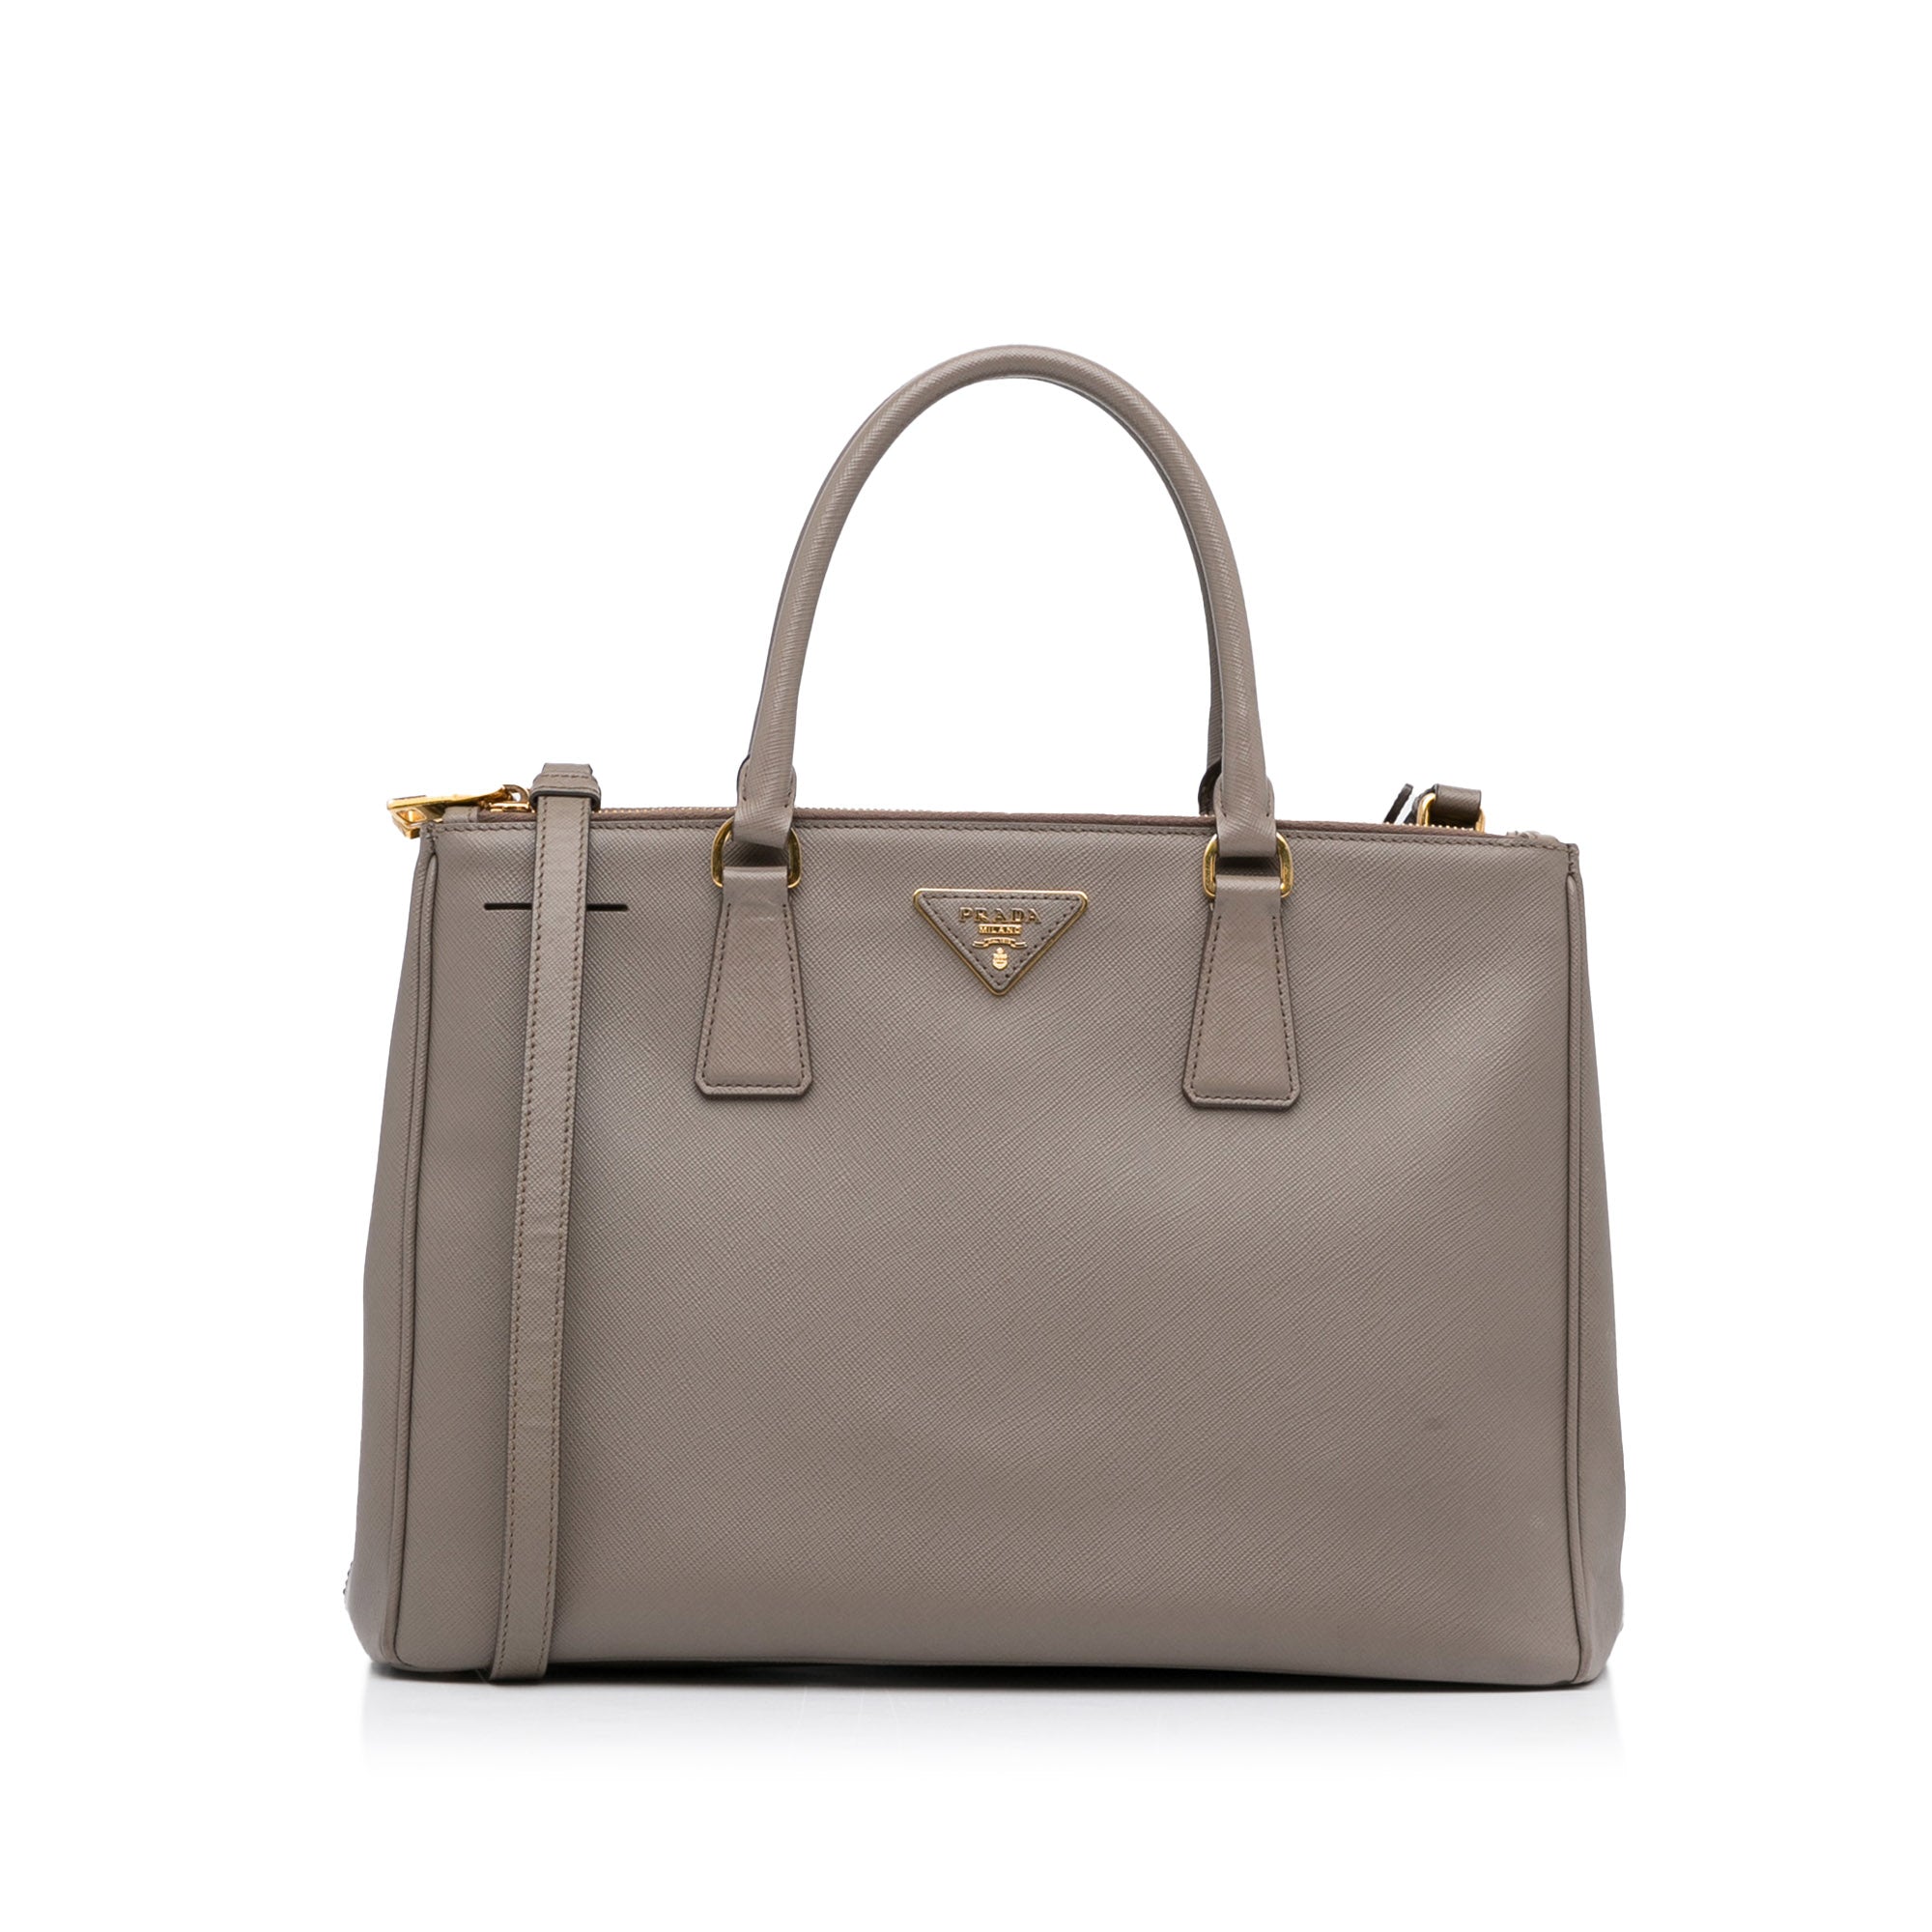 Medium Prada Galleria Bag in Saffiano - Prada - Woman